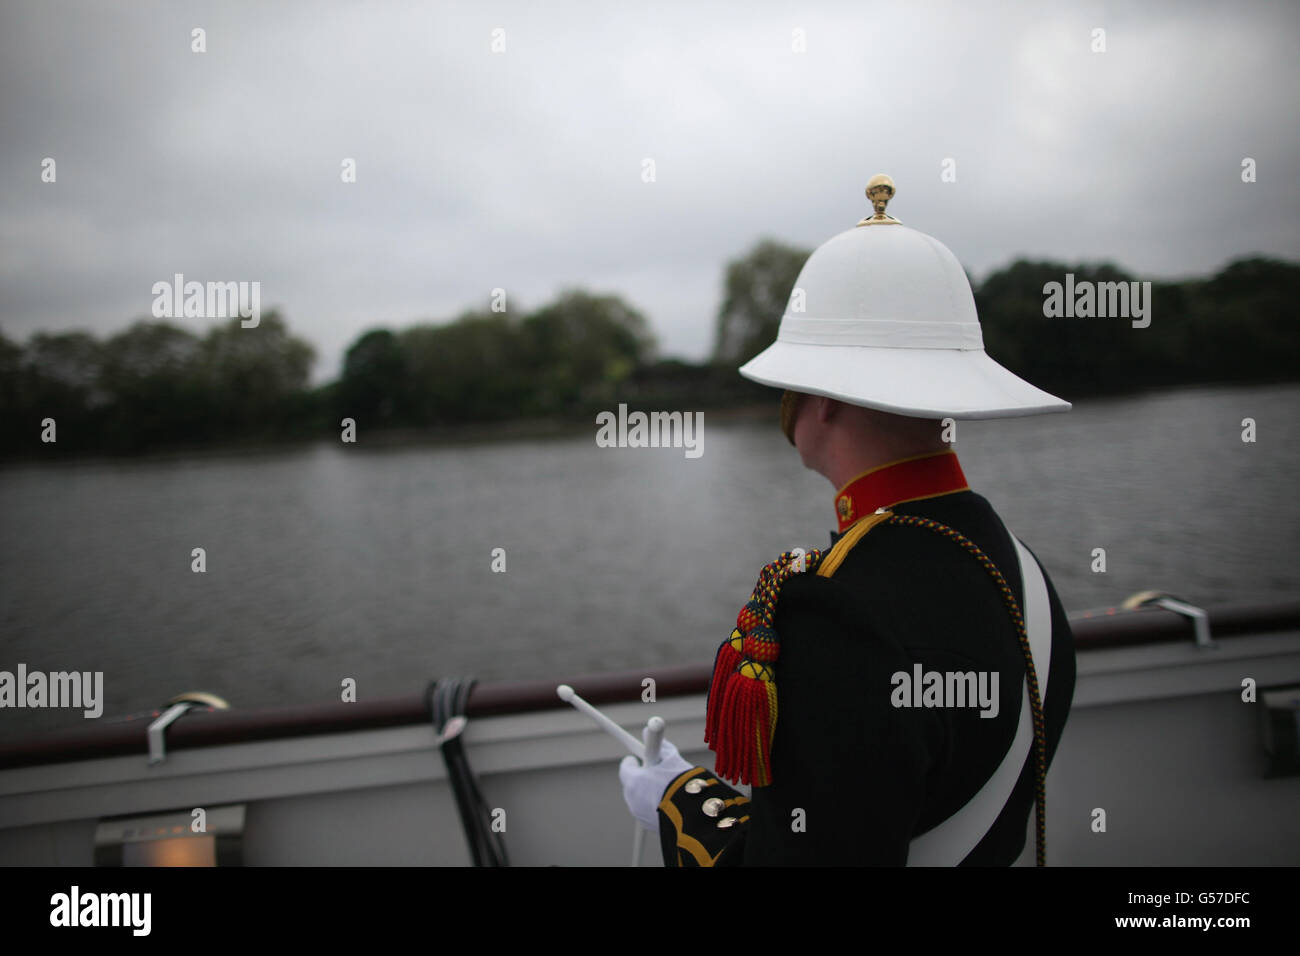 La bande des Royal Marines attend pour se produire pendant le Diamond Jubilee River Pageant sur la Tamise, Londres. Banque D'Images